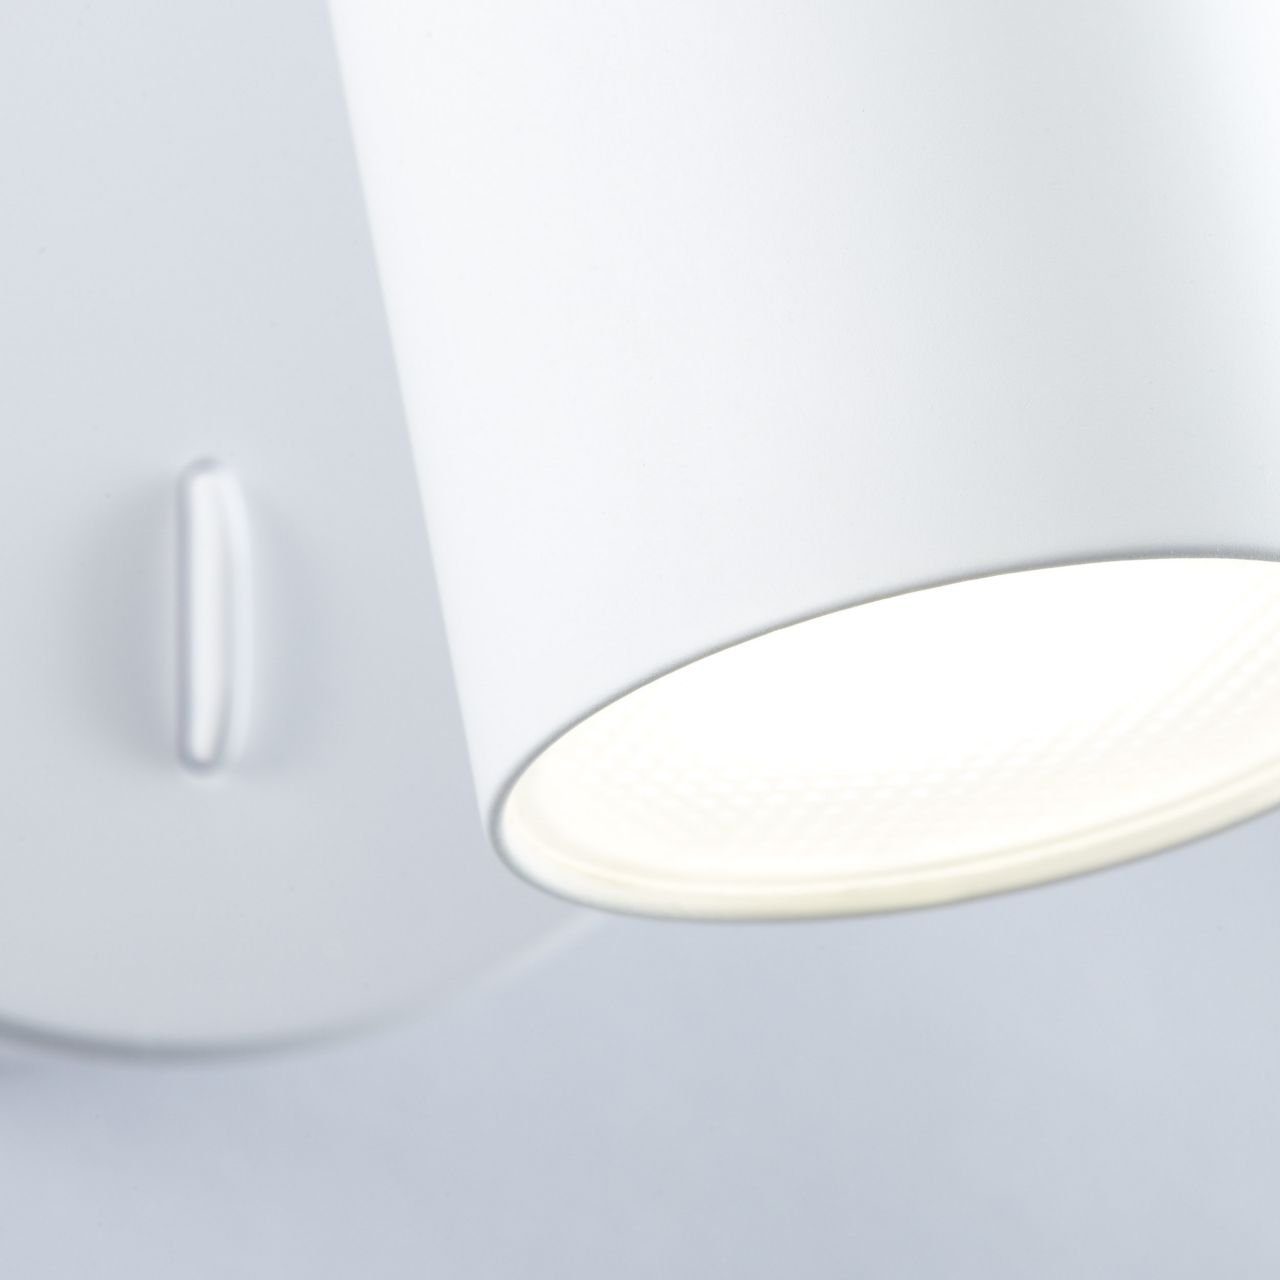 (410lm 1x Wandleuchte Brilliant Soeren, Soeren Lampe matt Wandspot LED integriert, 4.5W LED weiß